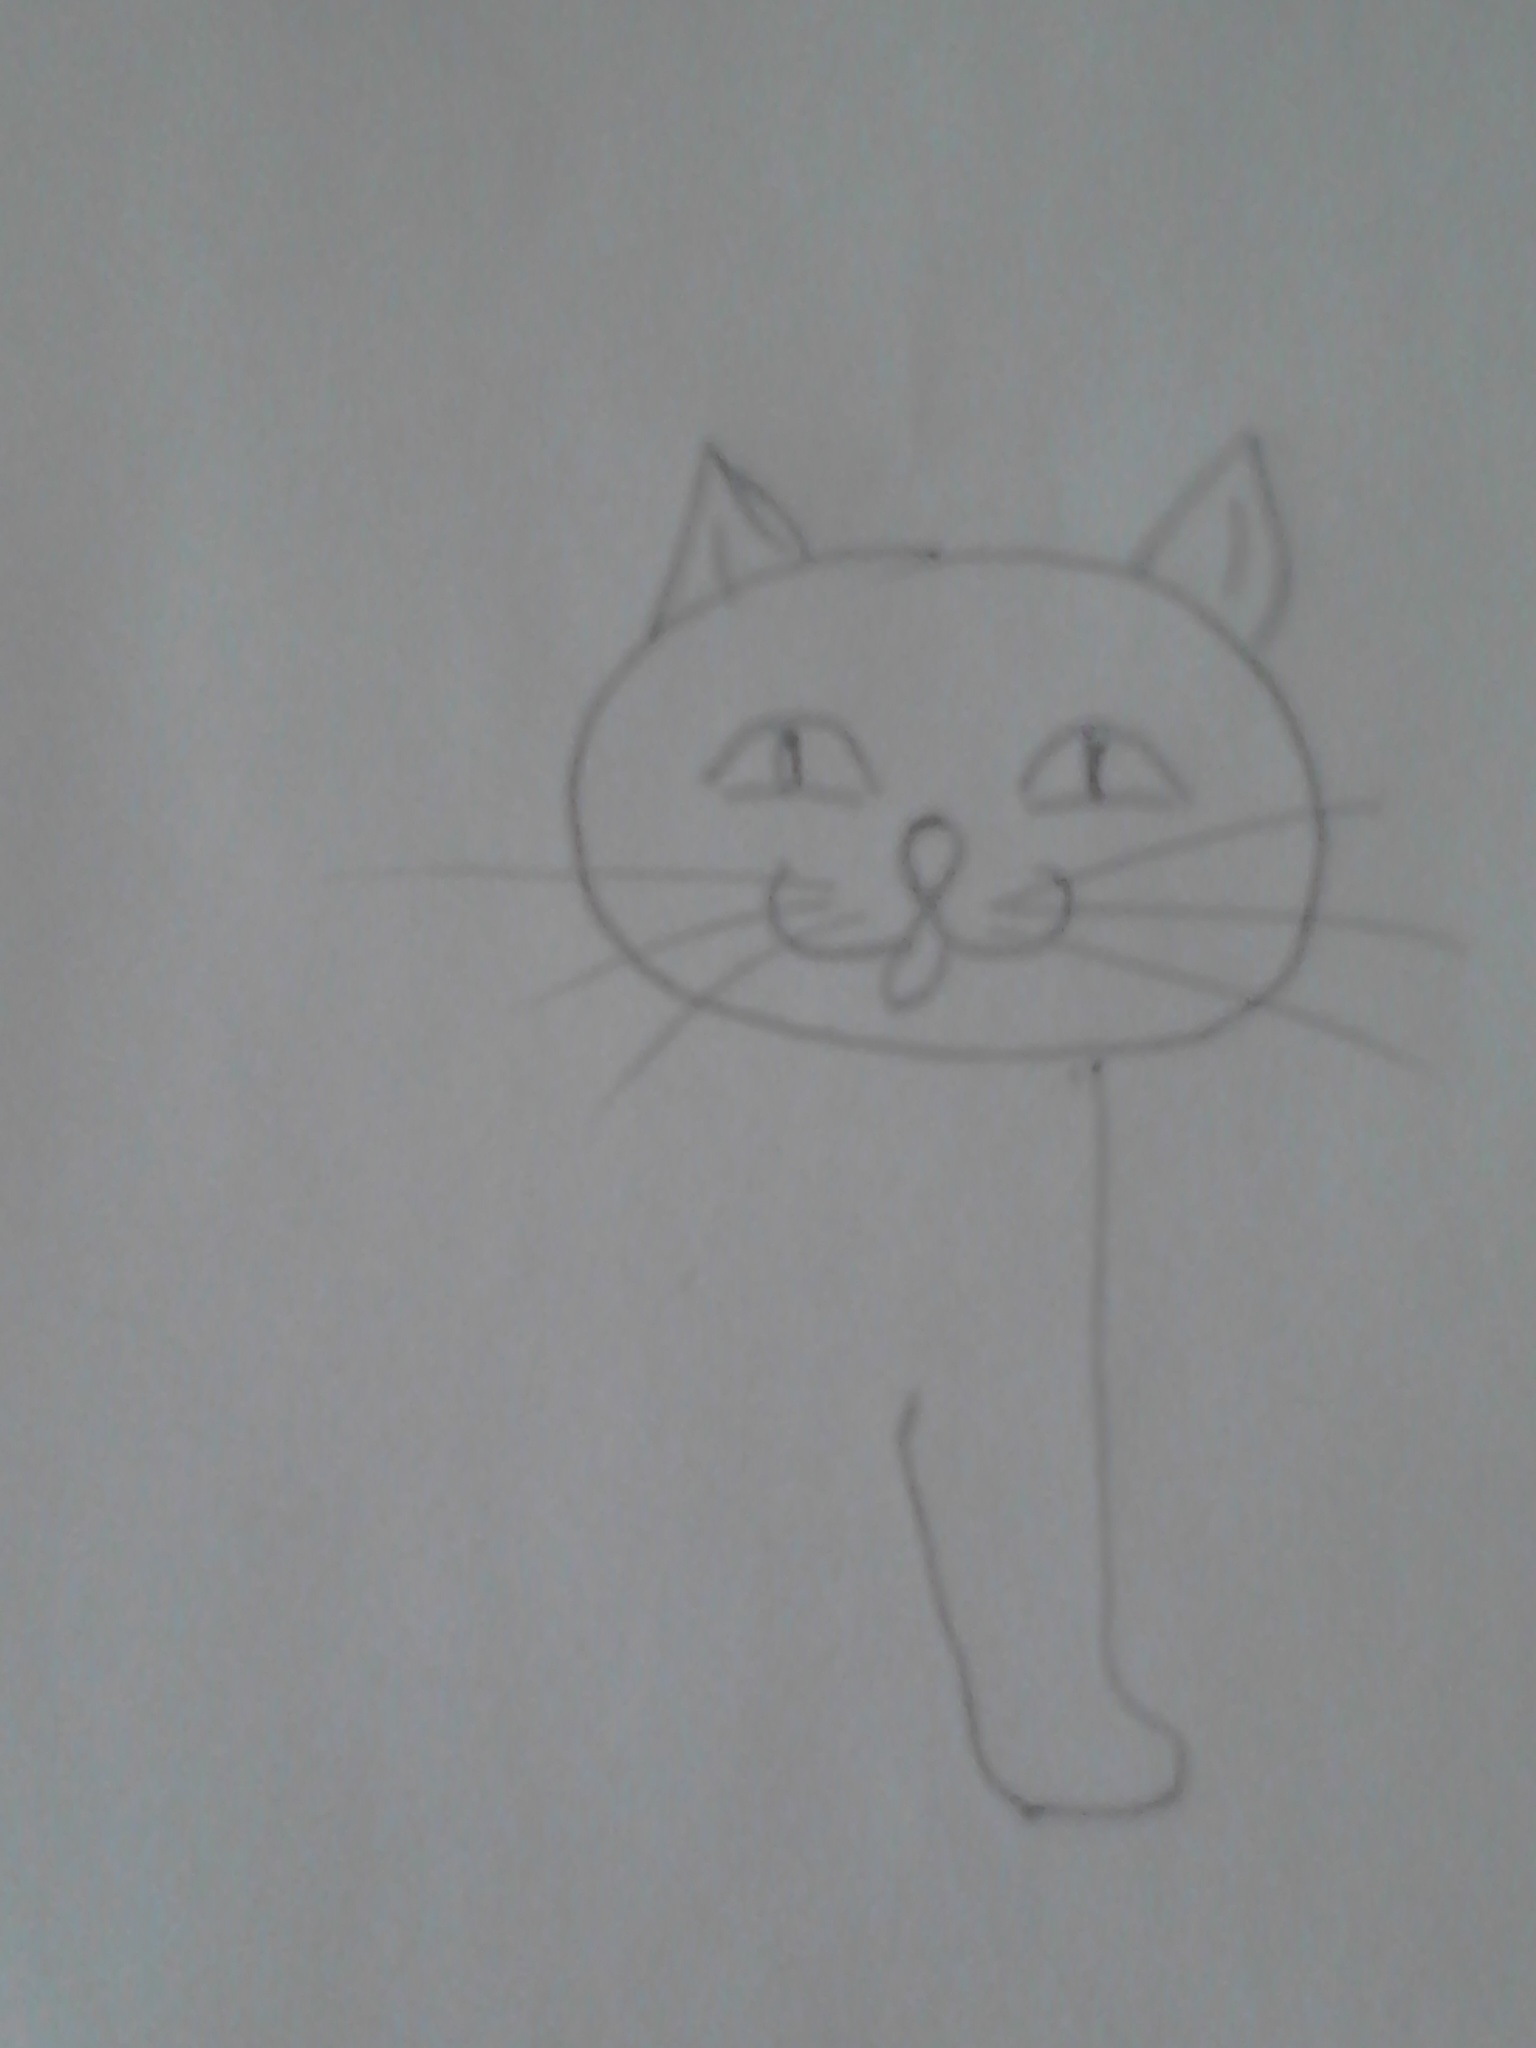 Как научить ребенка рисовать кошку (home.children.detskiyvopros) : Рассылка  : Subscribe.Ru